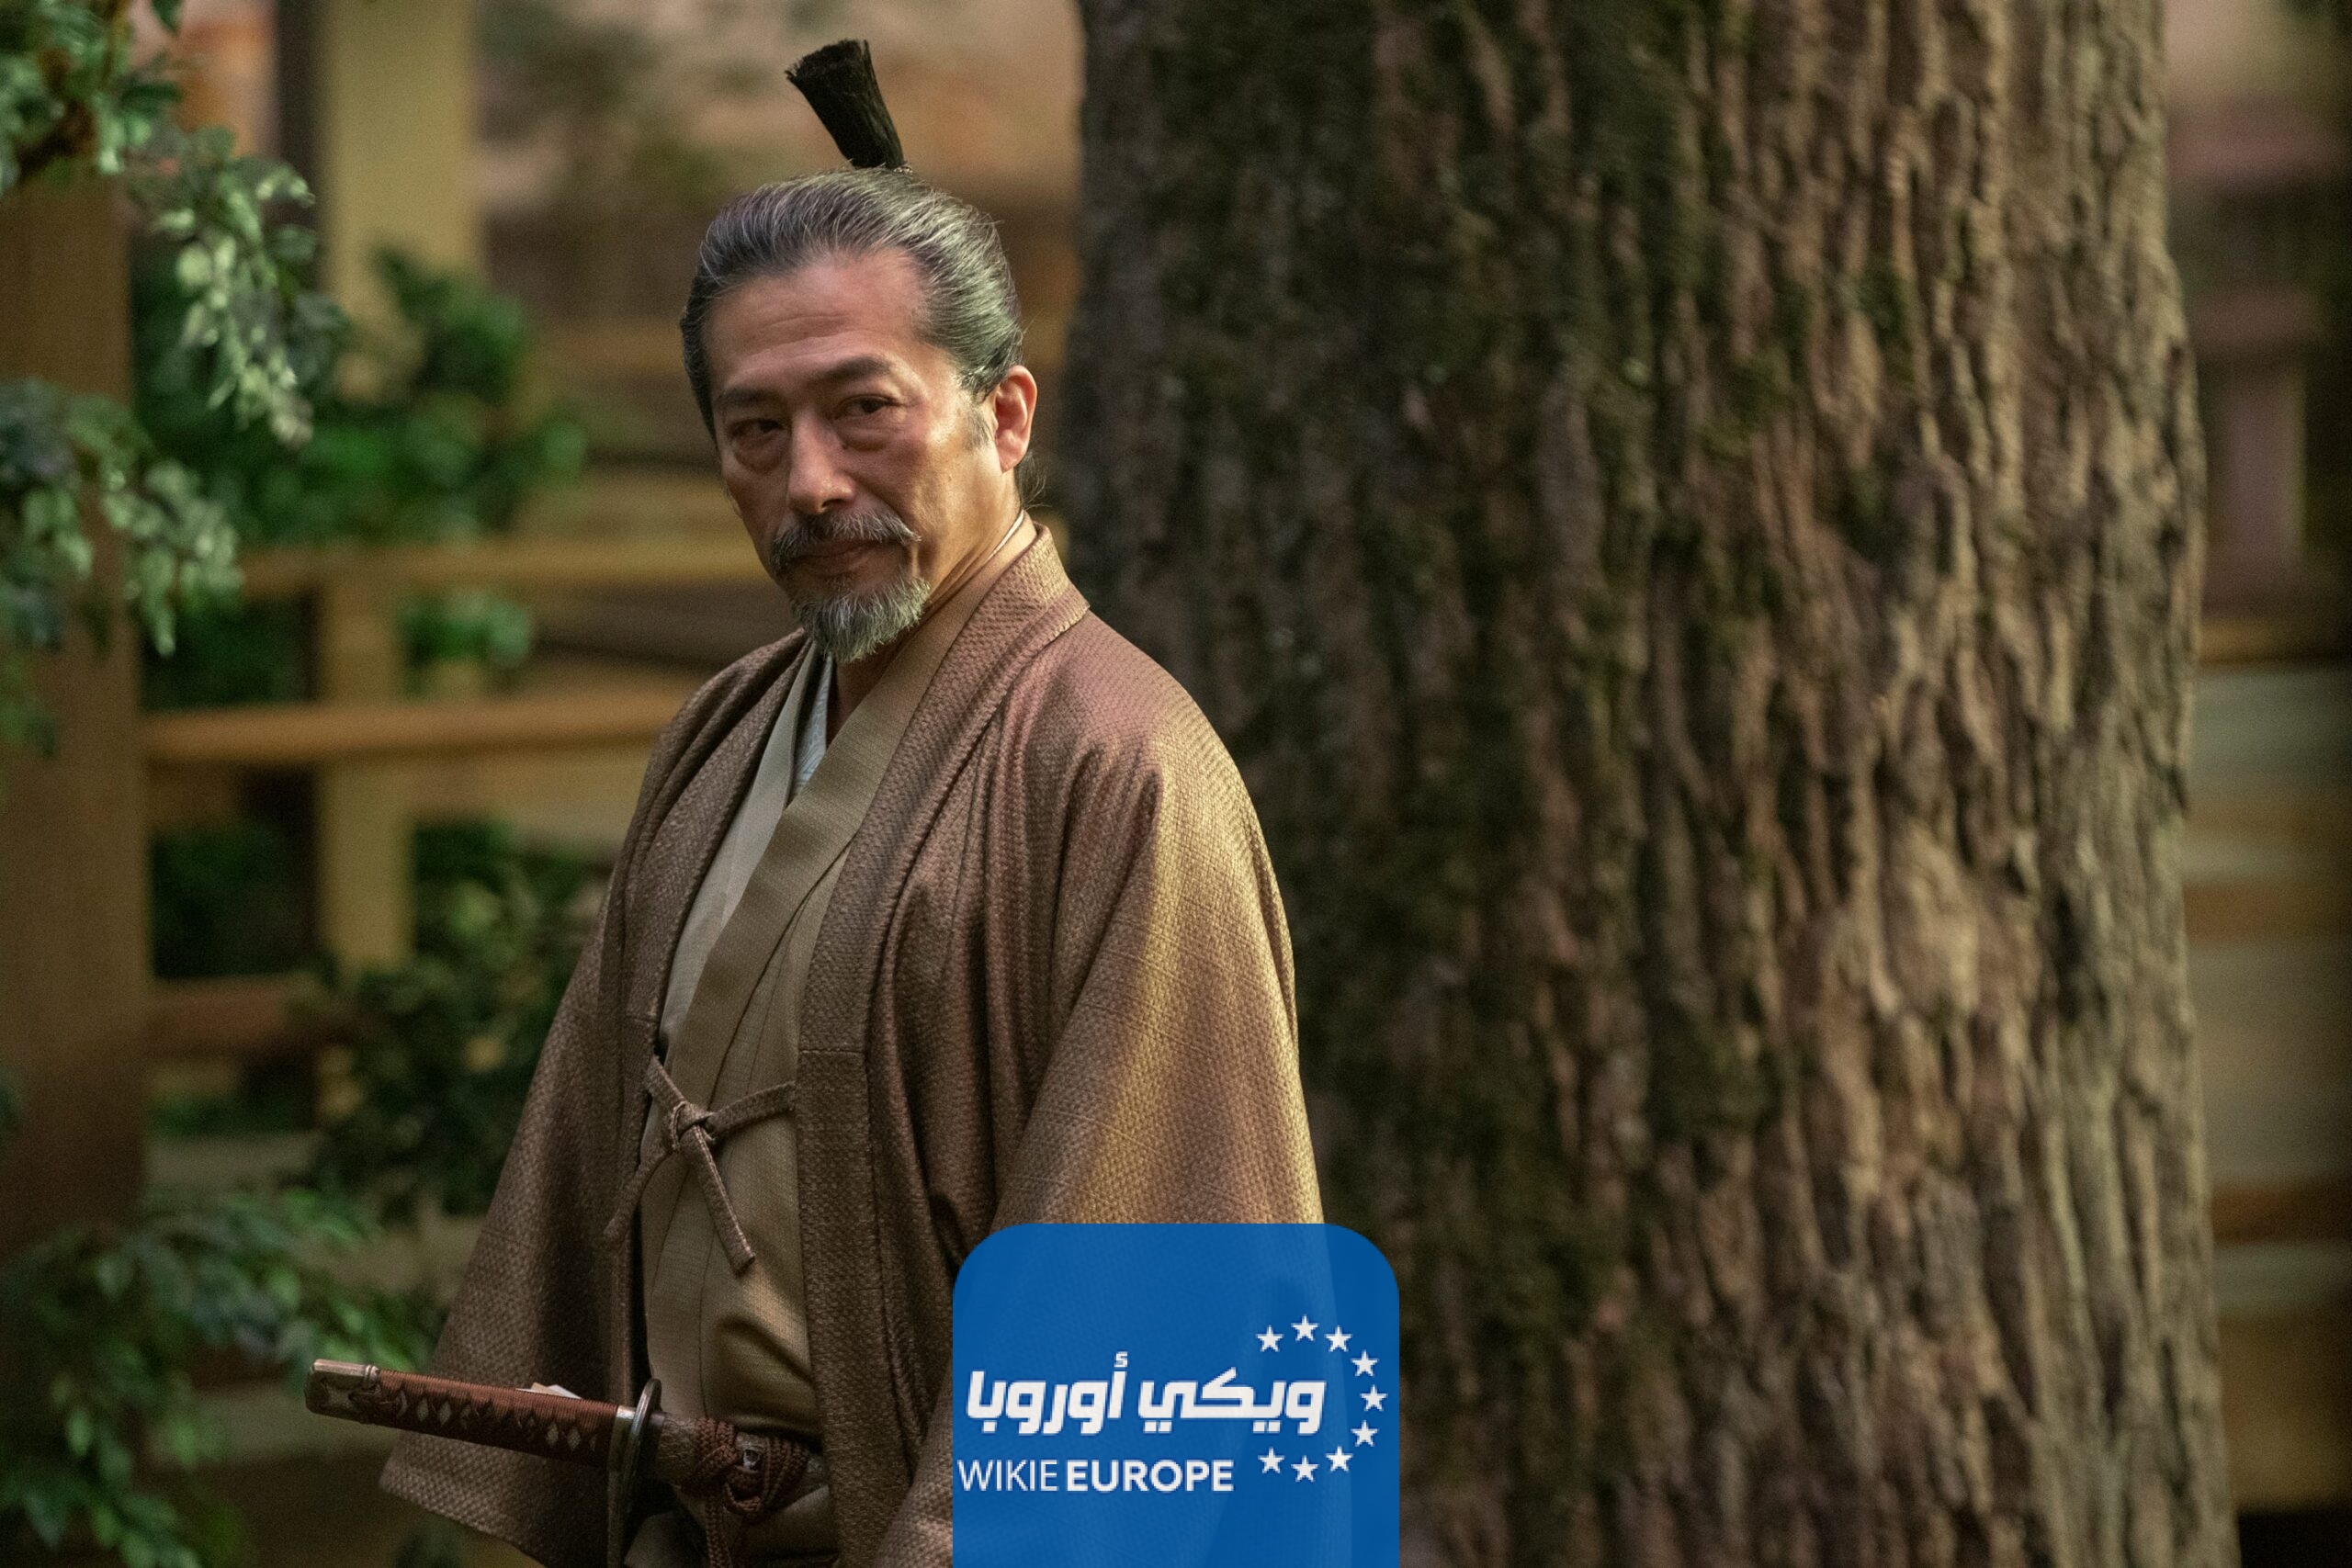 مشاهدة مسلسل shogun الحلقة 4 الرابعة مترجمة